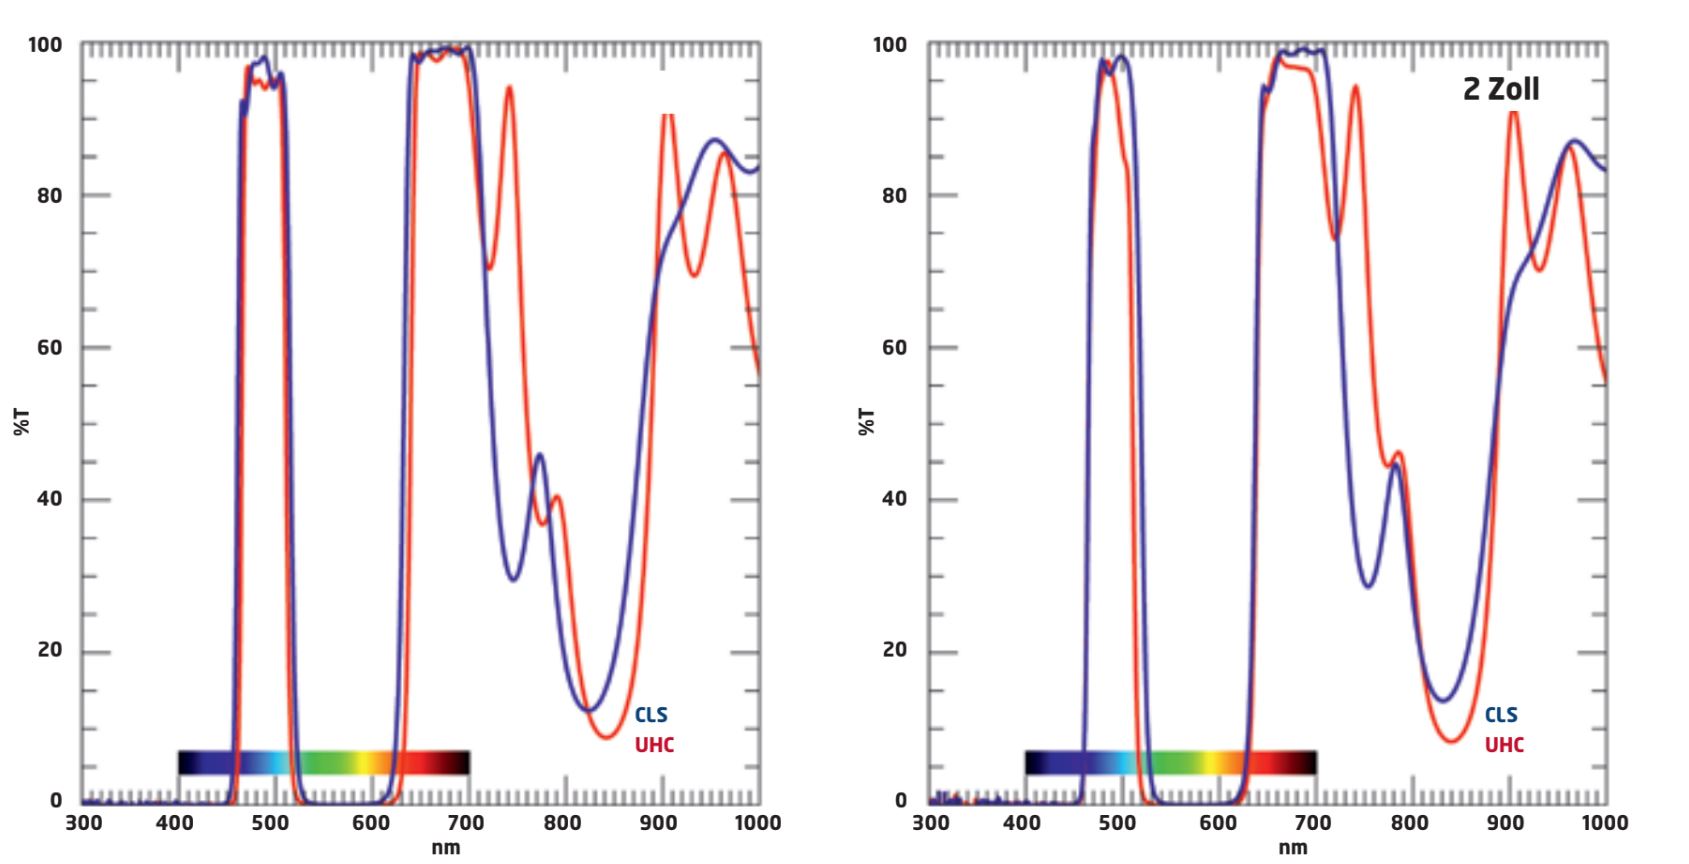 Diagramele de transmisie ale filtrelor UHC și CLS